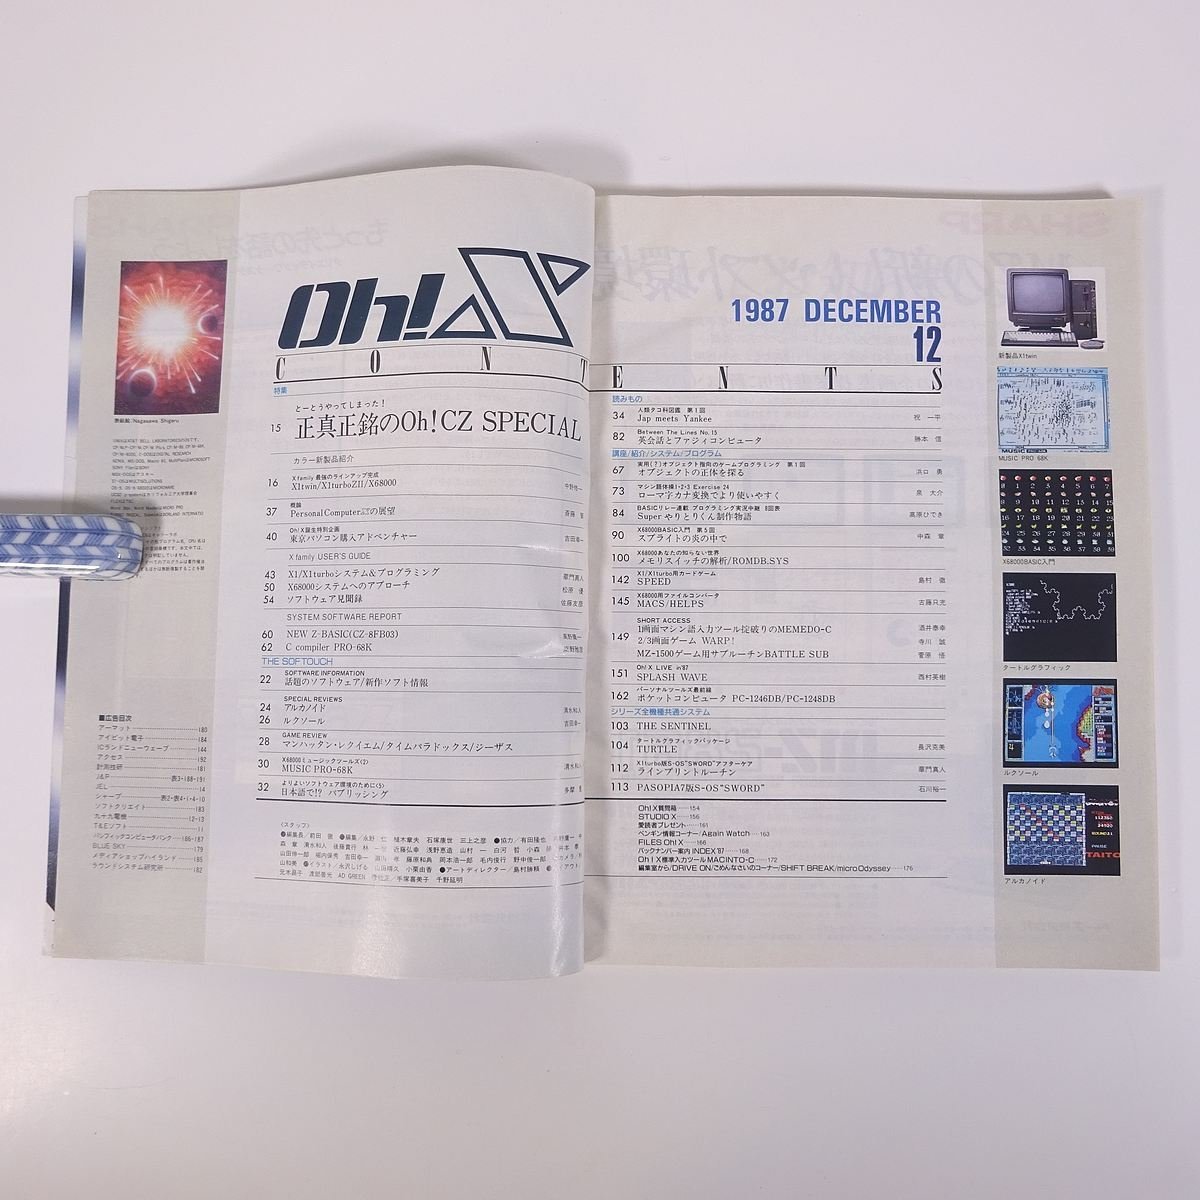 Oh!Xo-! X No.68 1987/12 Япония SoftBank журнал PC компьютернные игры MZ X1 X68000 карманный компьютер специальный выпуск * подлинный. Oh!CZ SPECIAL